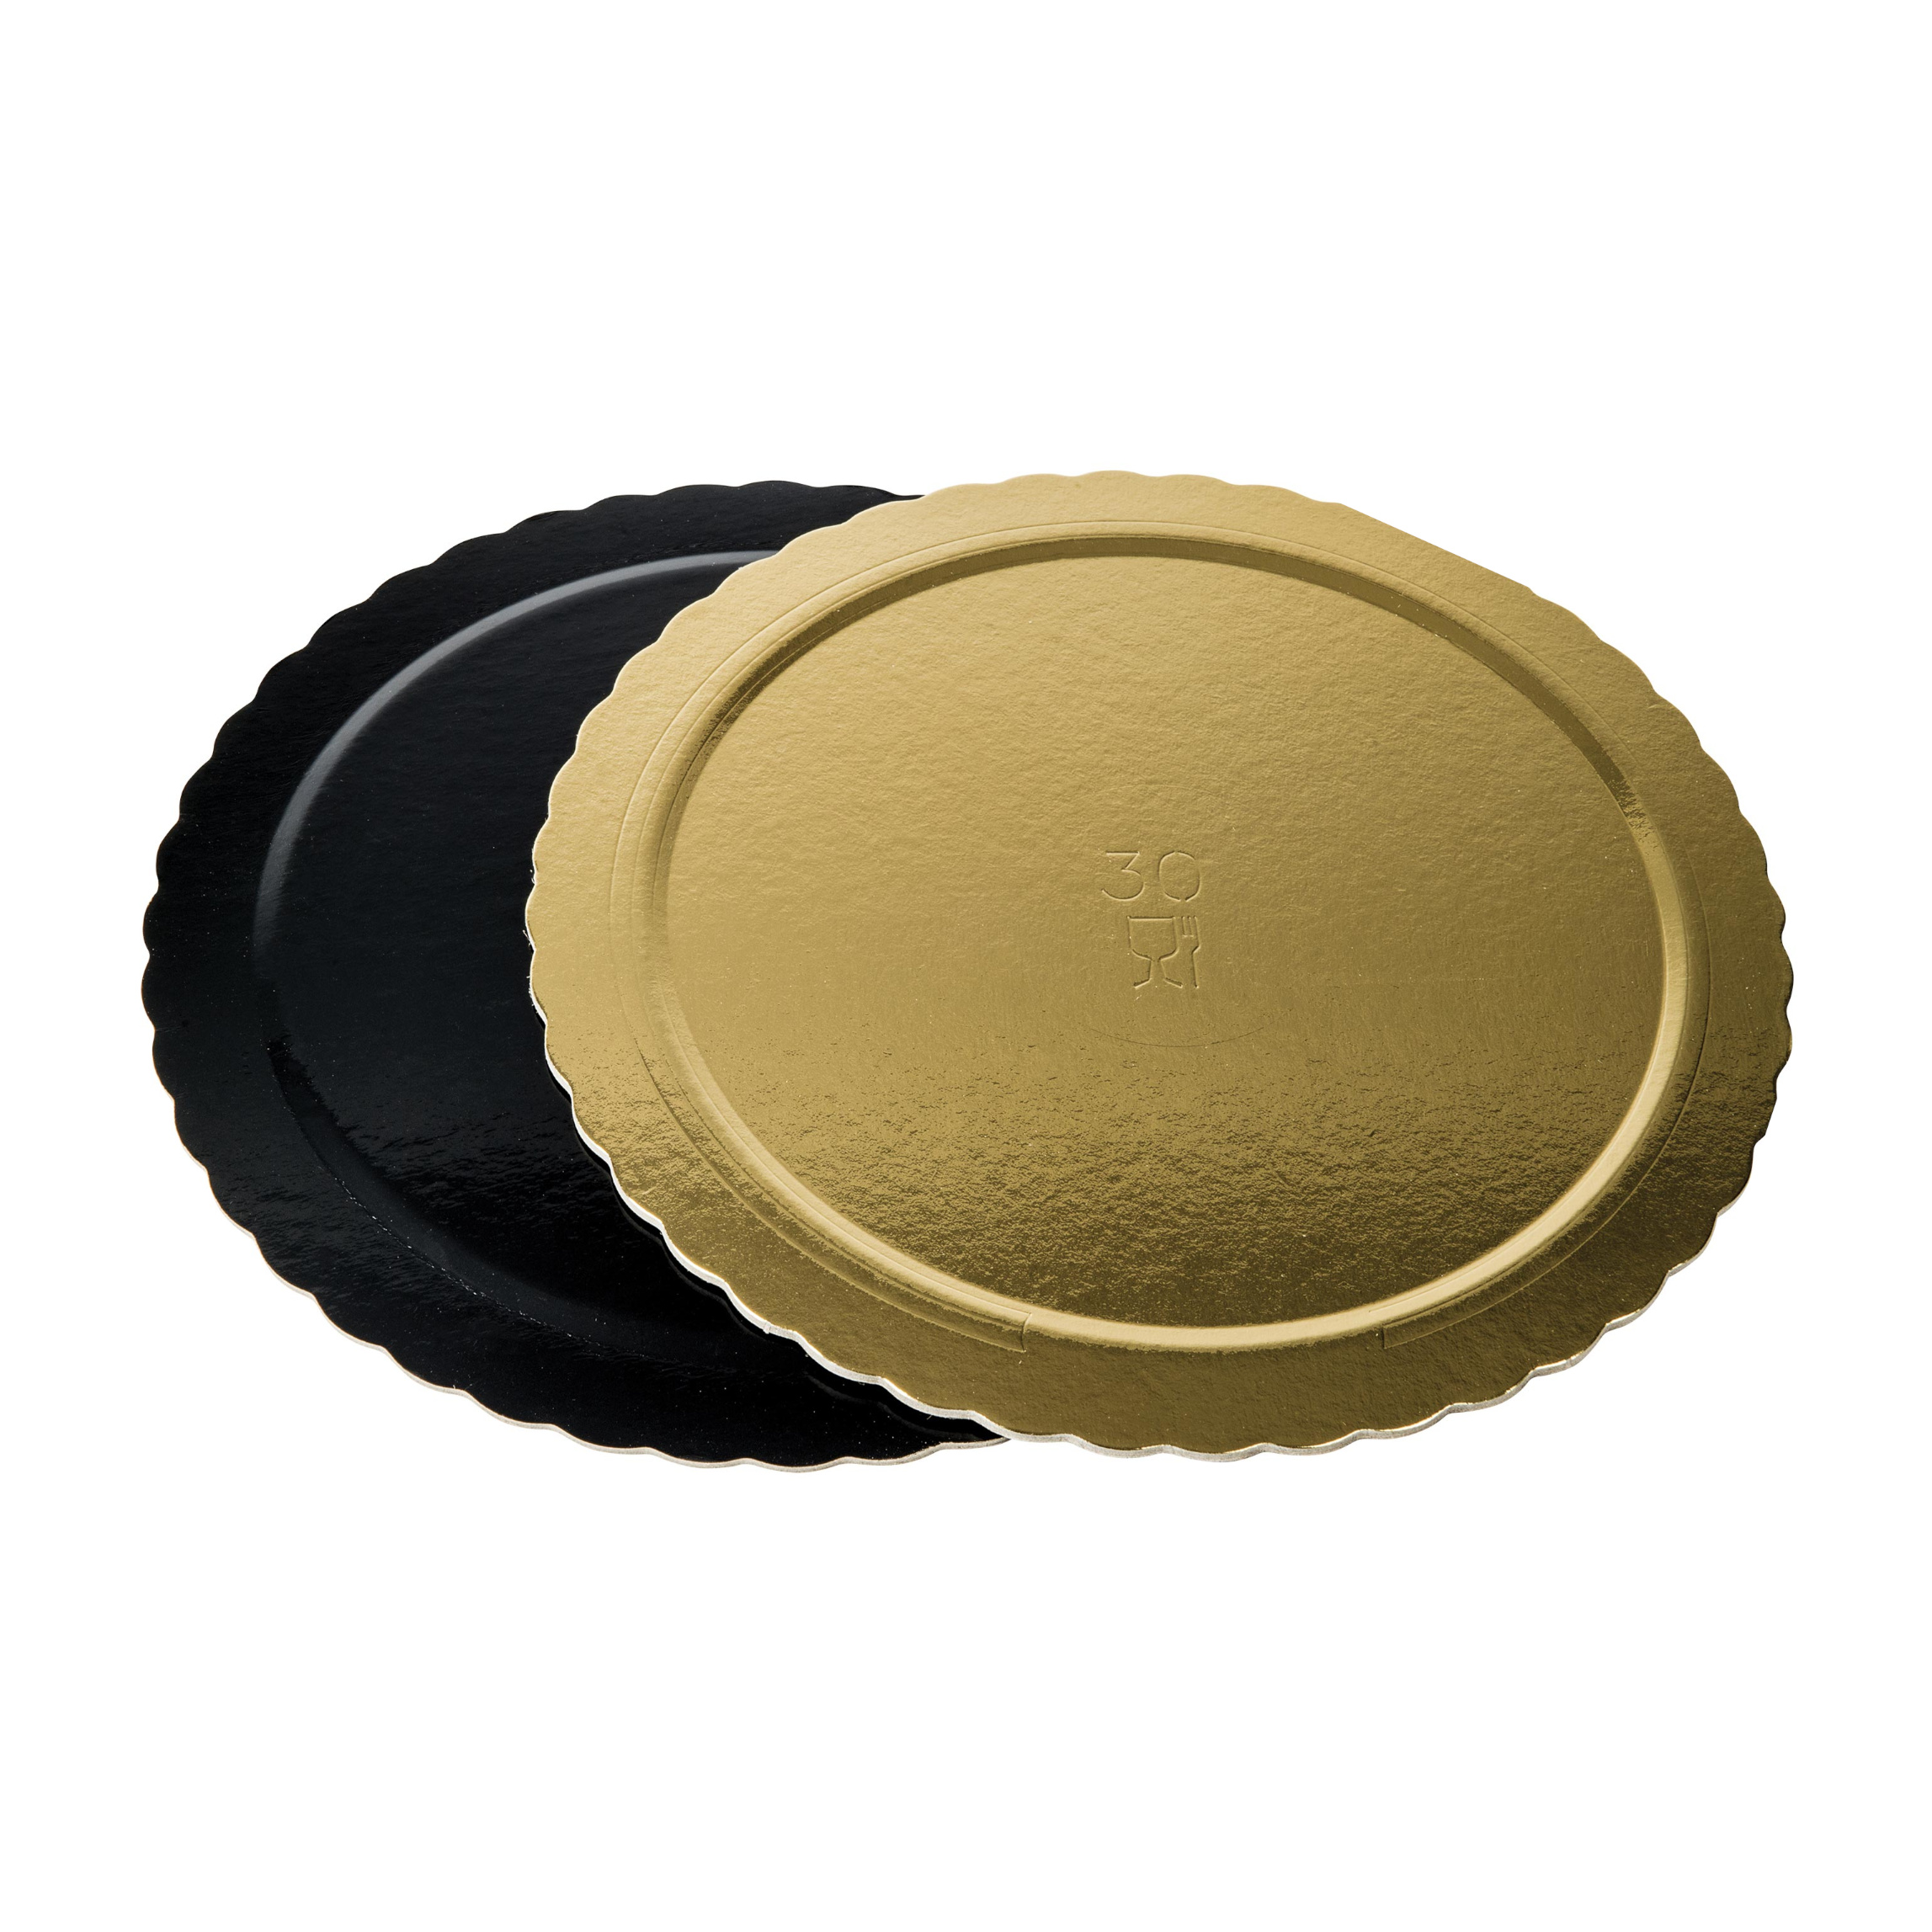 Dischi sottotorta kappati oro/nero 36cm pacchetto da 10kg